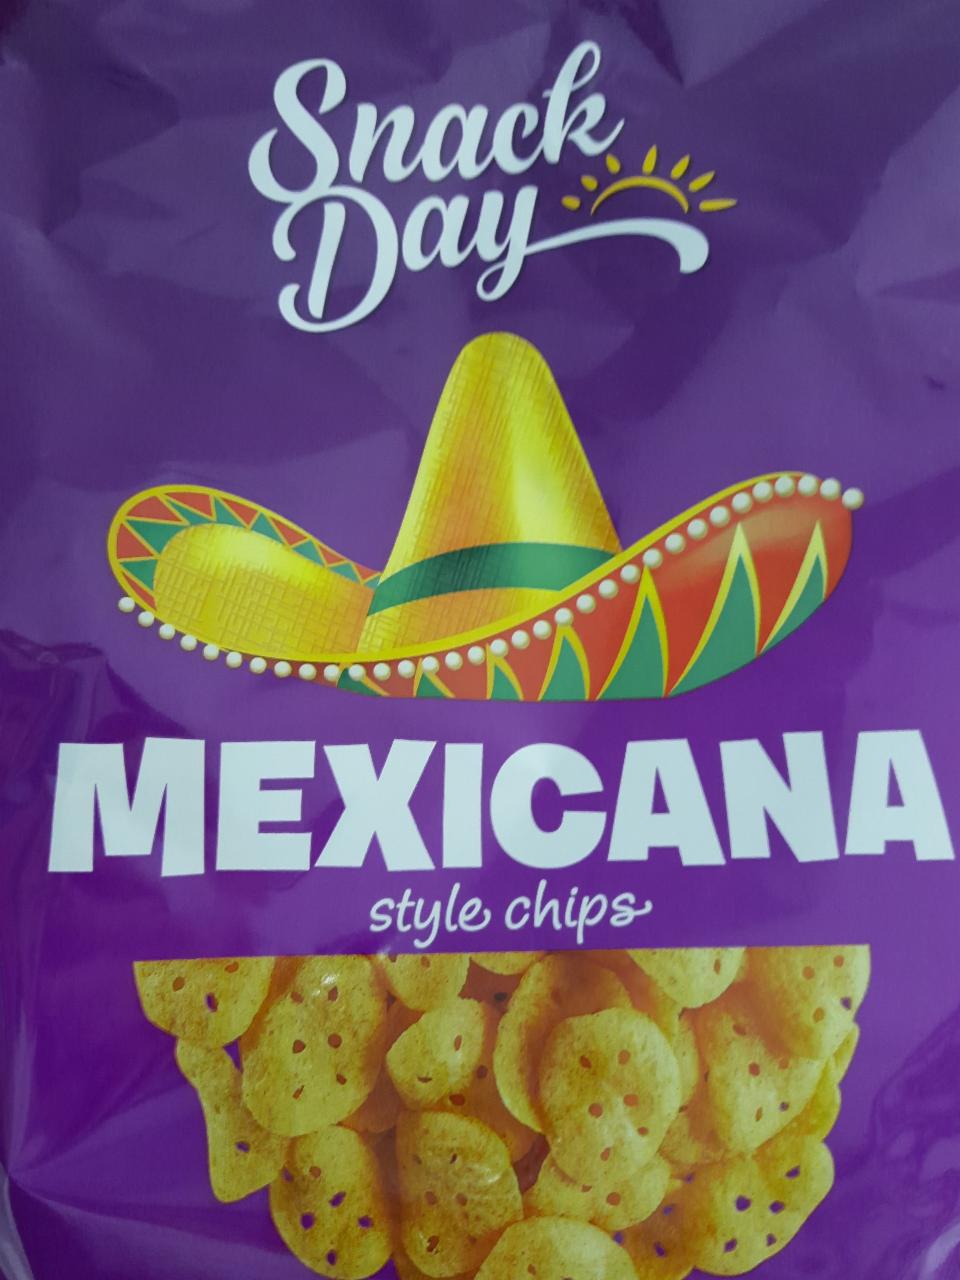 Zdjęcia - mexicana style chips snack day